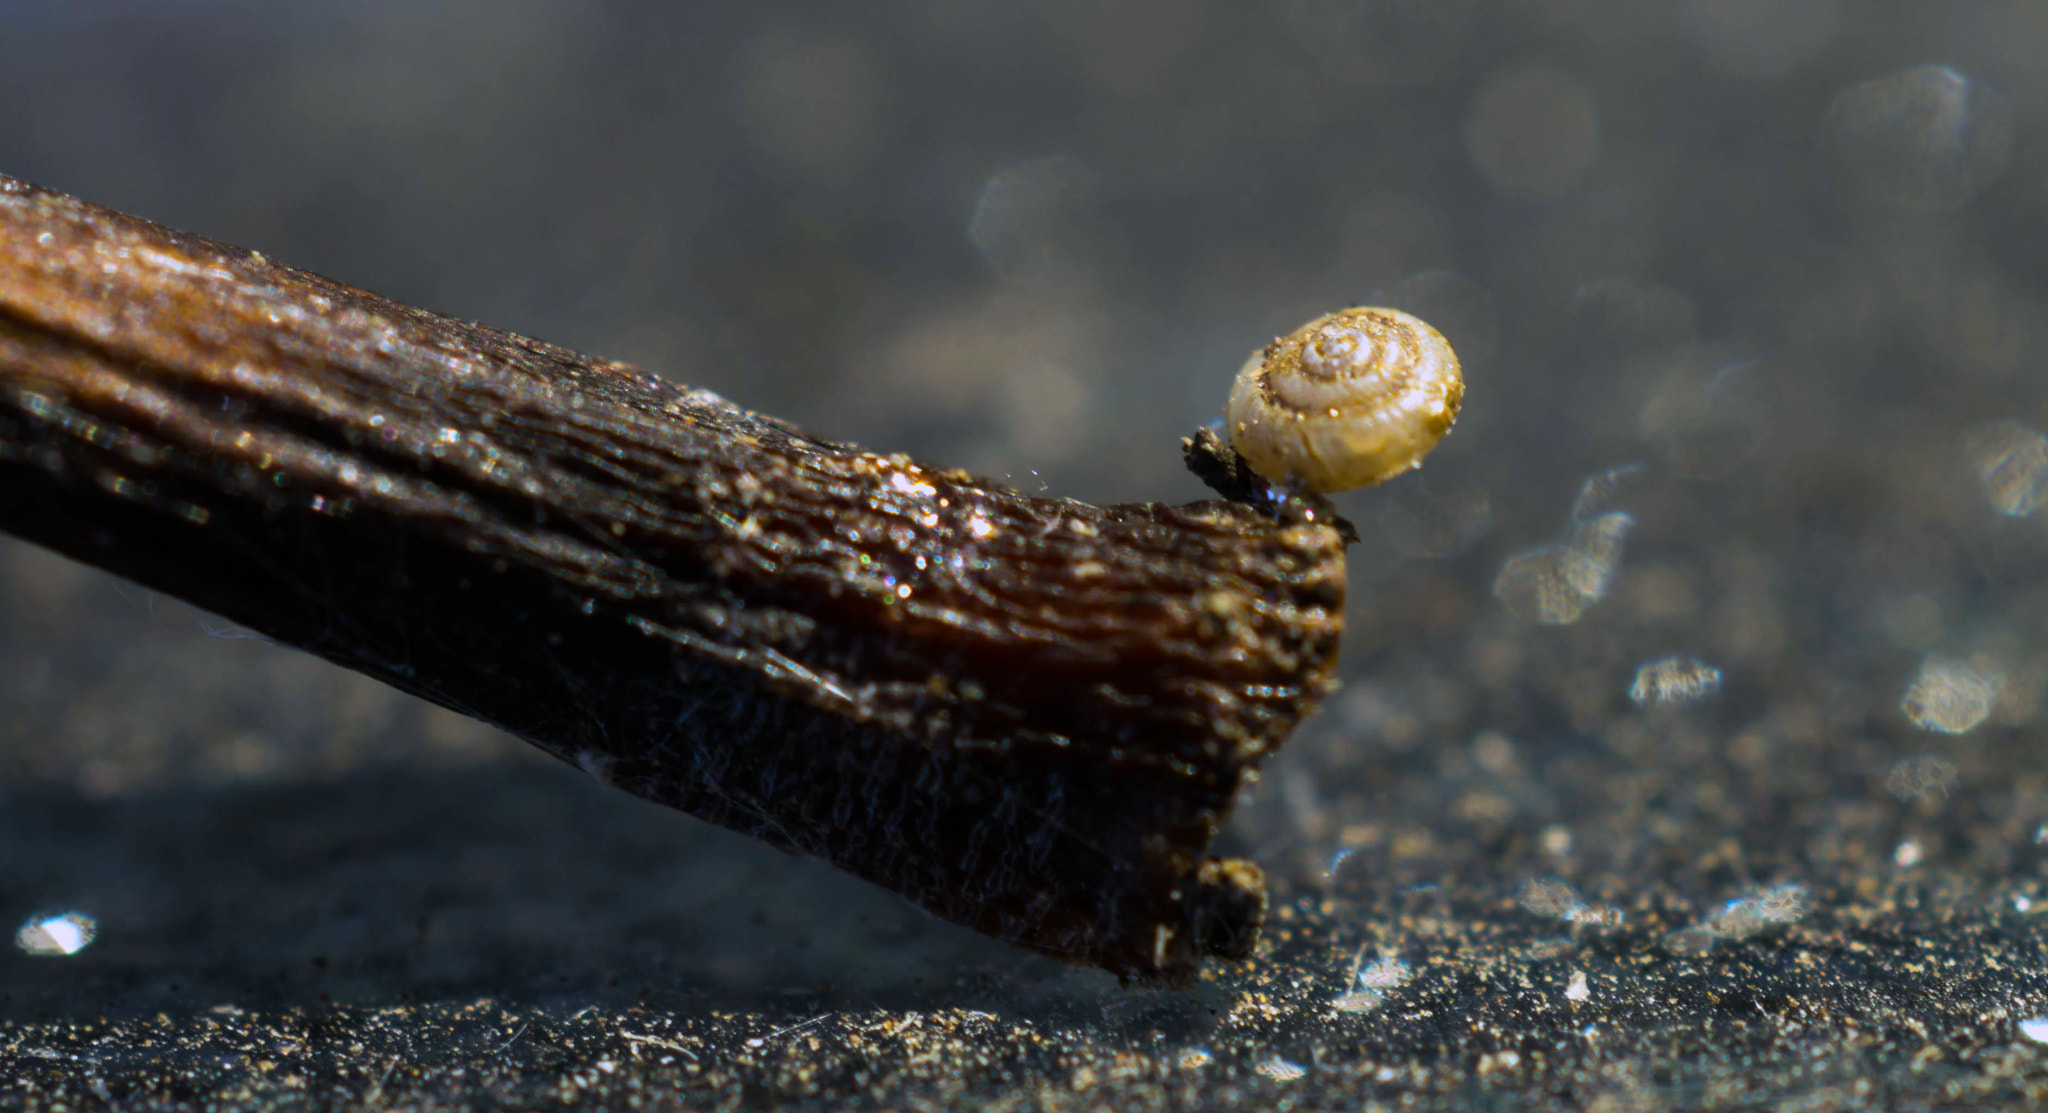 Sony SLT-A57 + MACRO 50mm F2.8 sample photo. Tiny snail photography